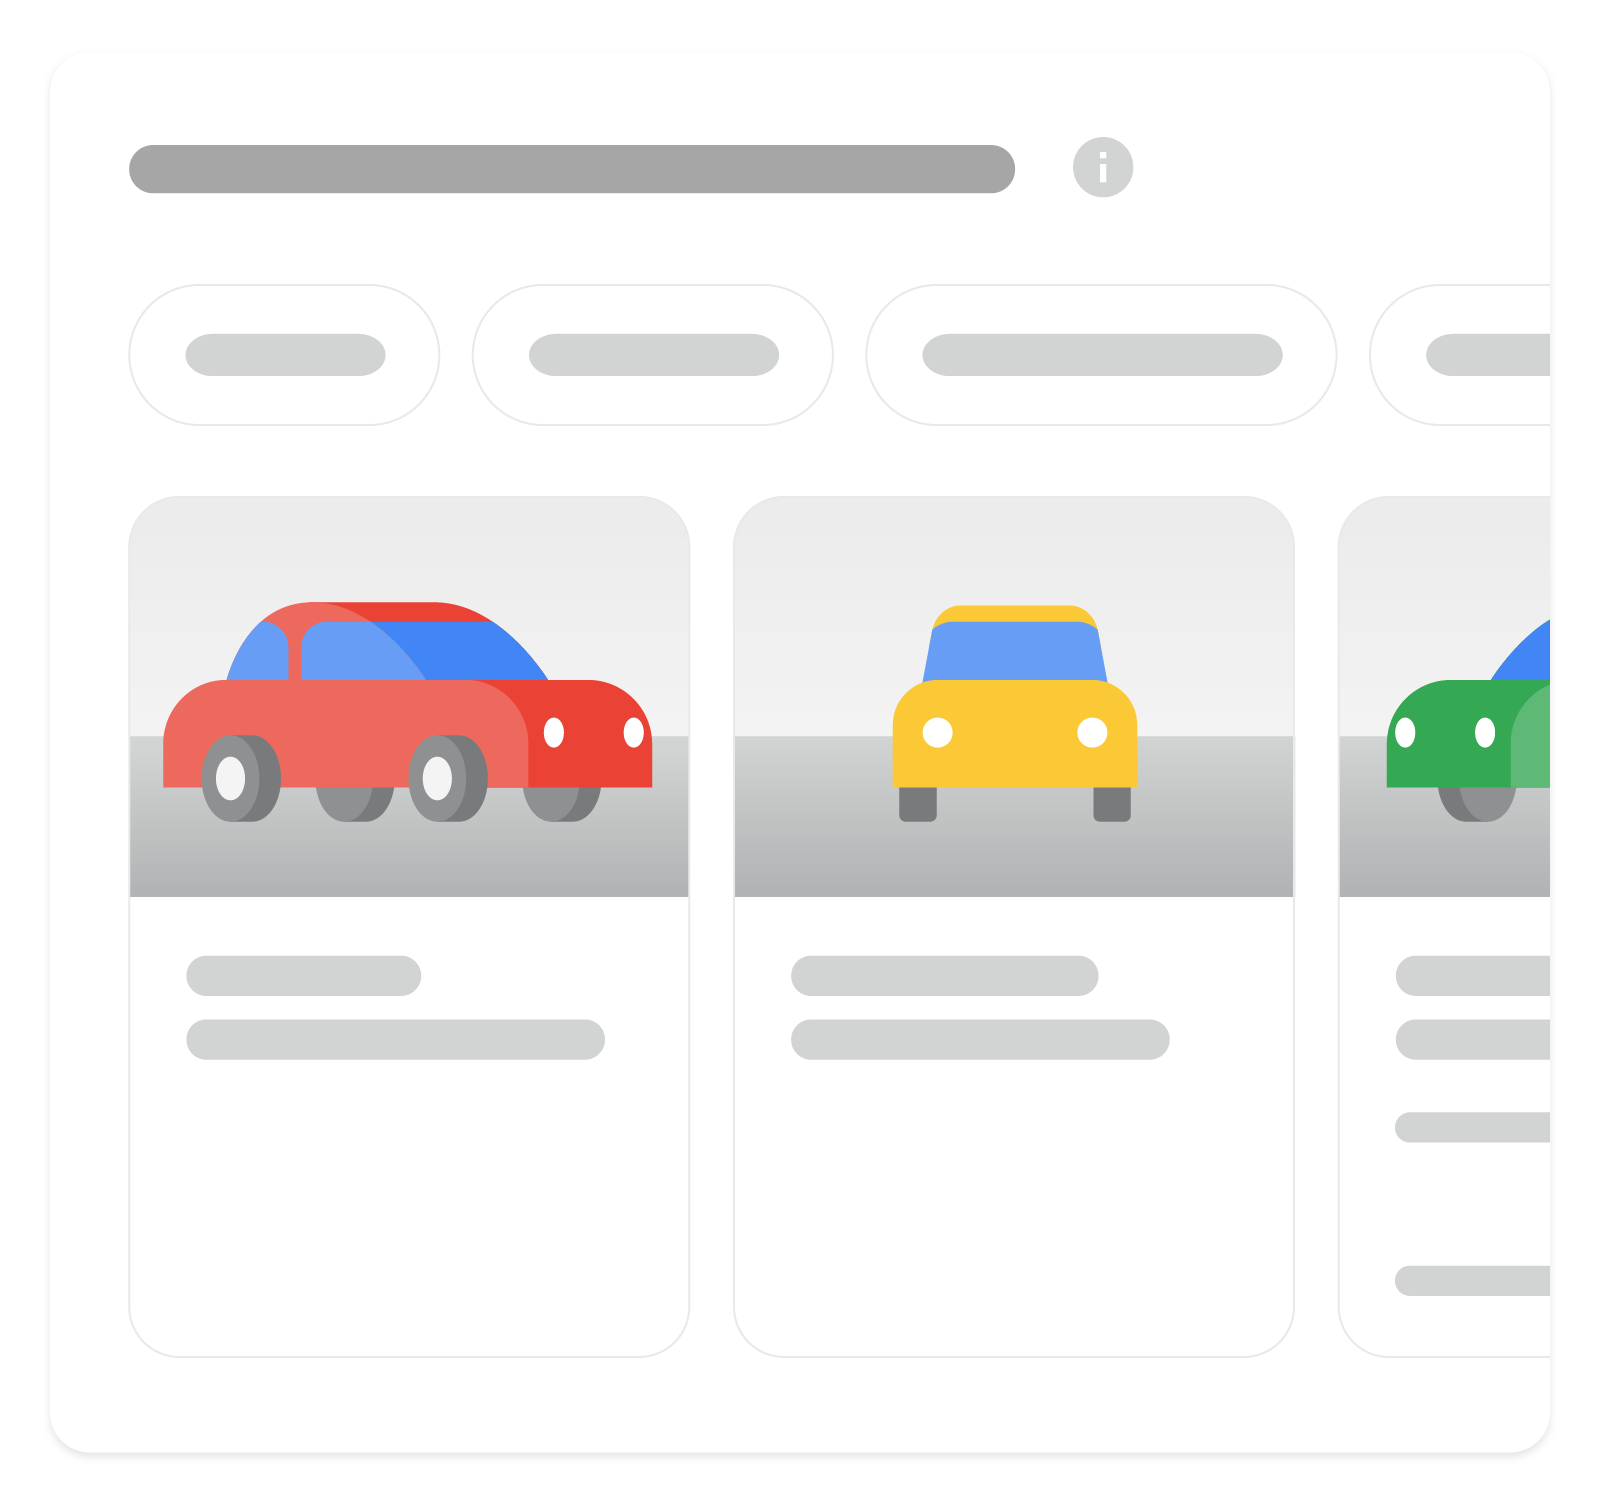 इमेज, जिसमें बताया गया है कि Google Search पर, वाहन की लिस्टिंग वाले ज़्यादा बेहतर नतीजों (रिच रिज़ल्ट) को कैसे दिखाया जा सकता है